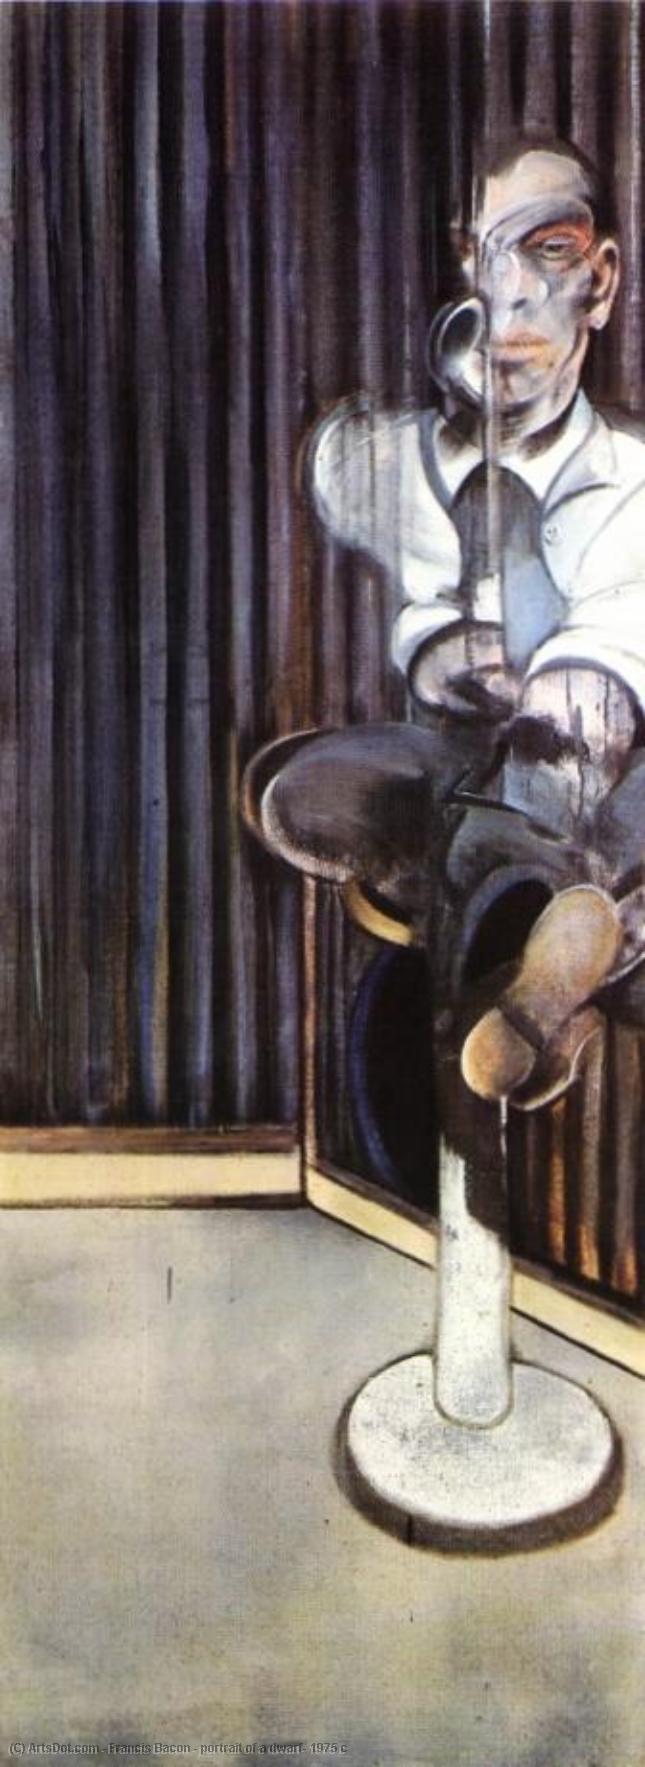 Wikioo.org - Bách khoa toàn thư về mỹ thuật - Vẽ tranh, Tác phẩm nghệ thuật Francis Bacon - portrait of a dwarf, 1975 c